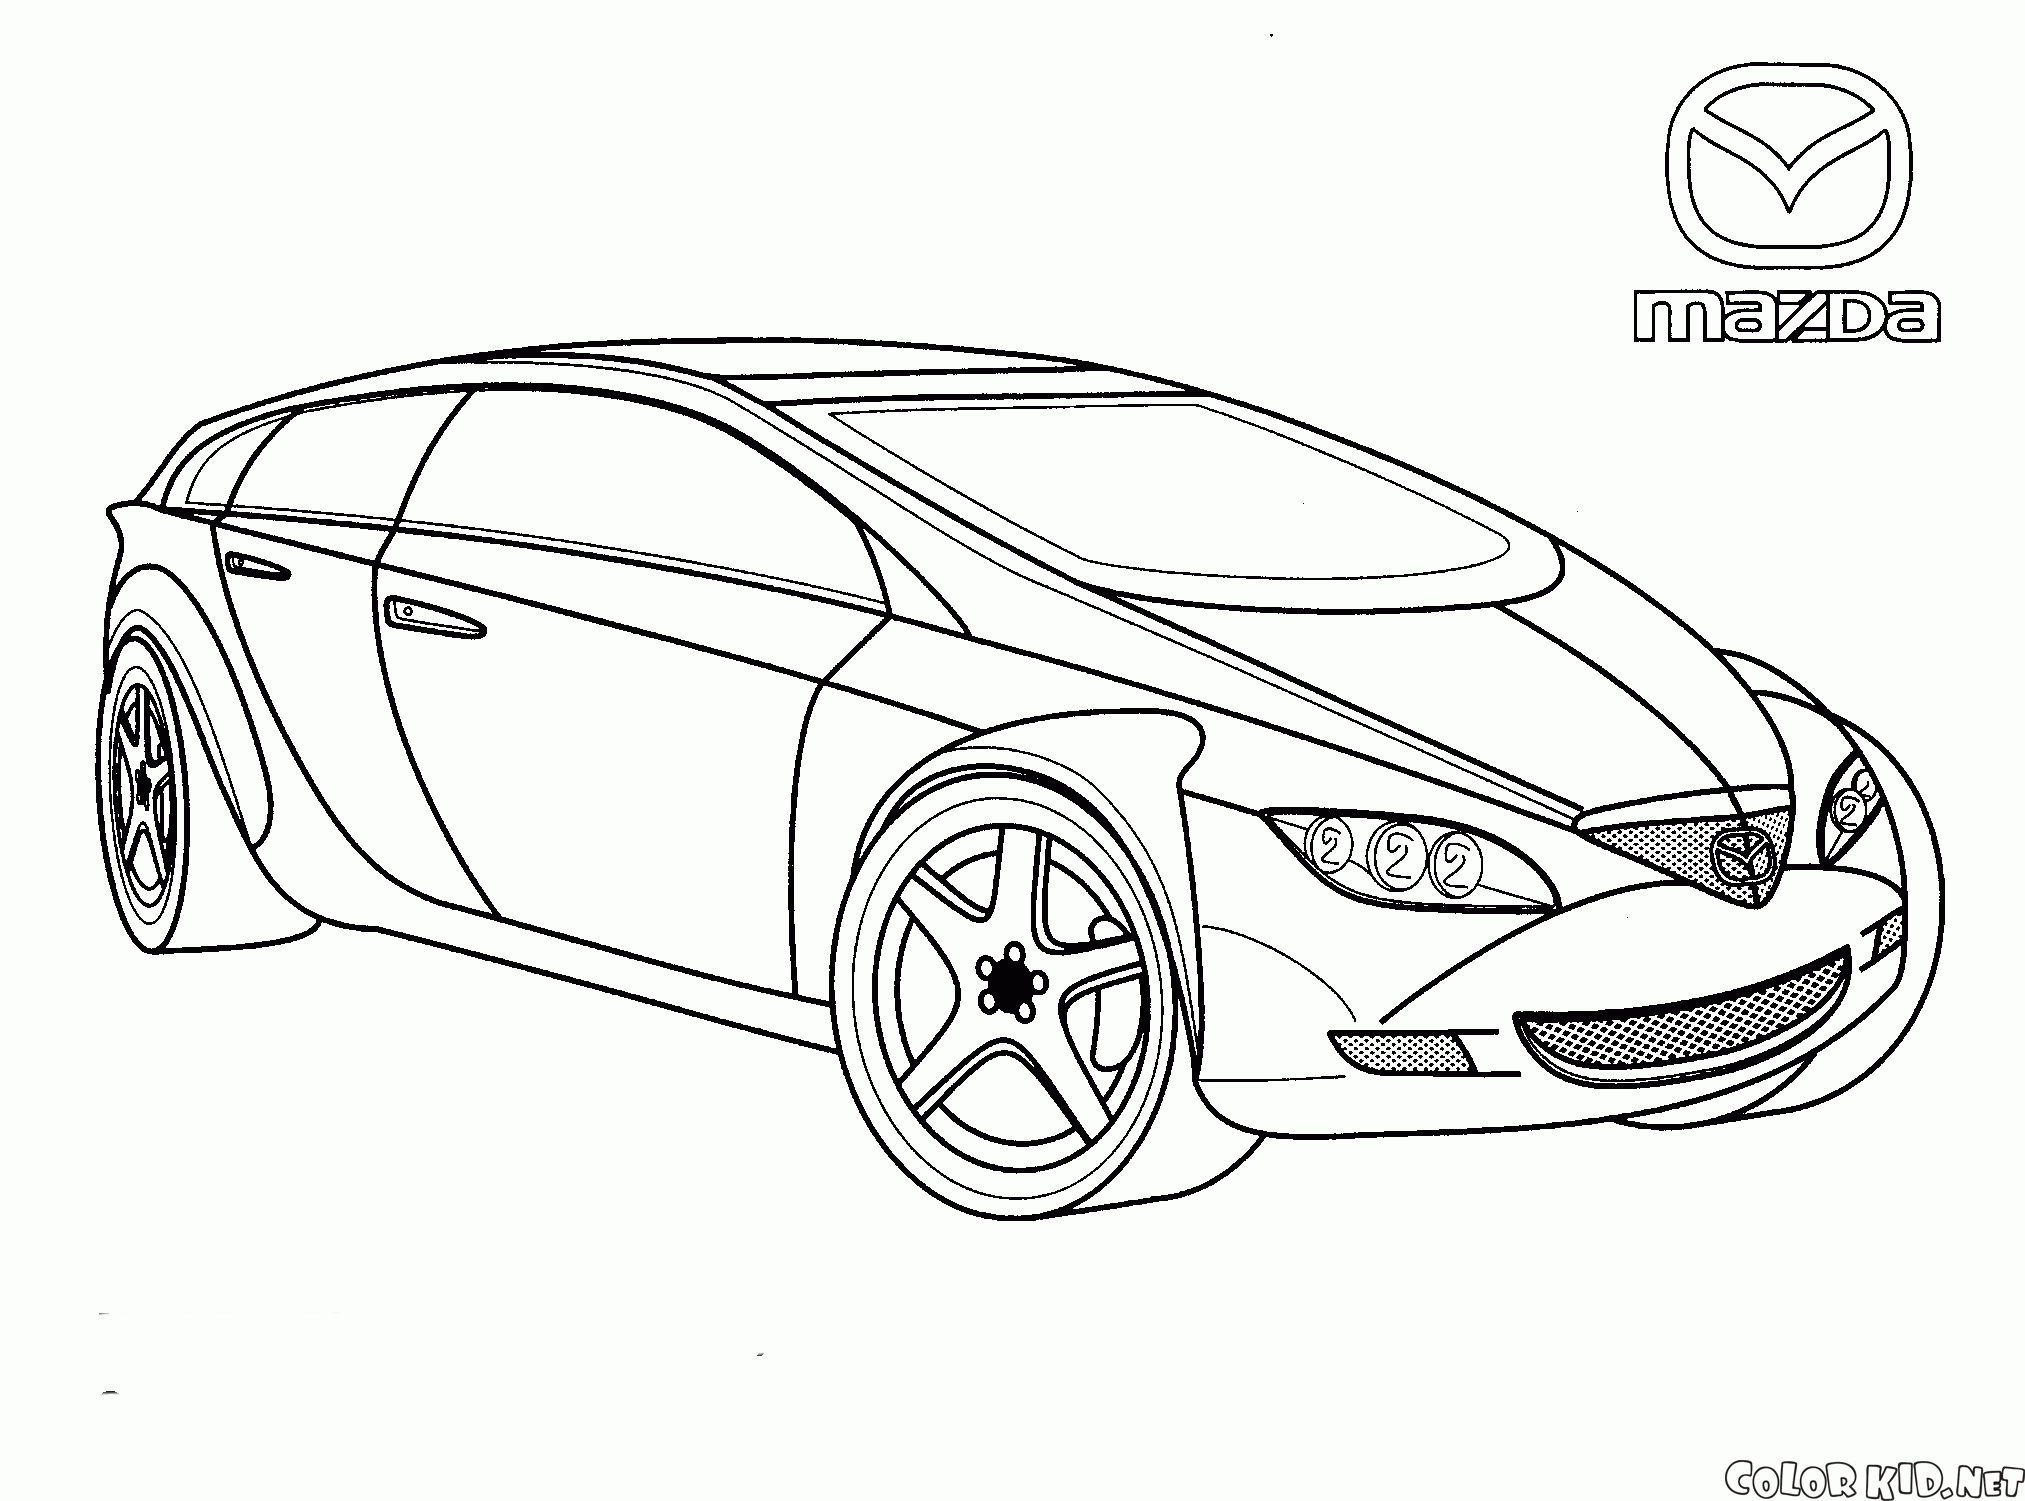 Mazda (Japon)